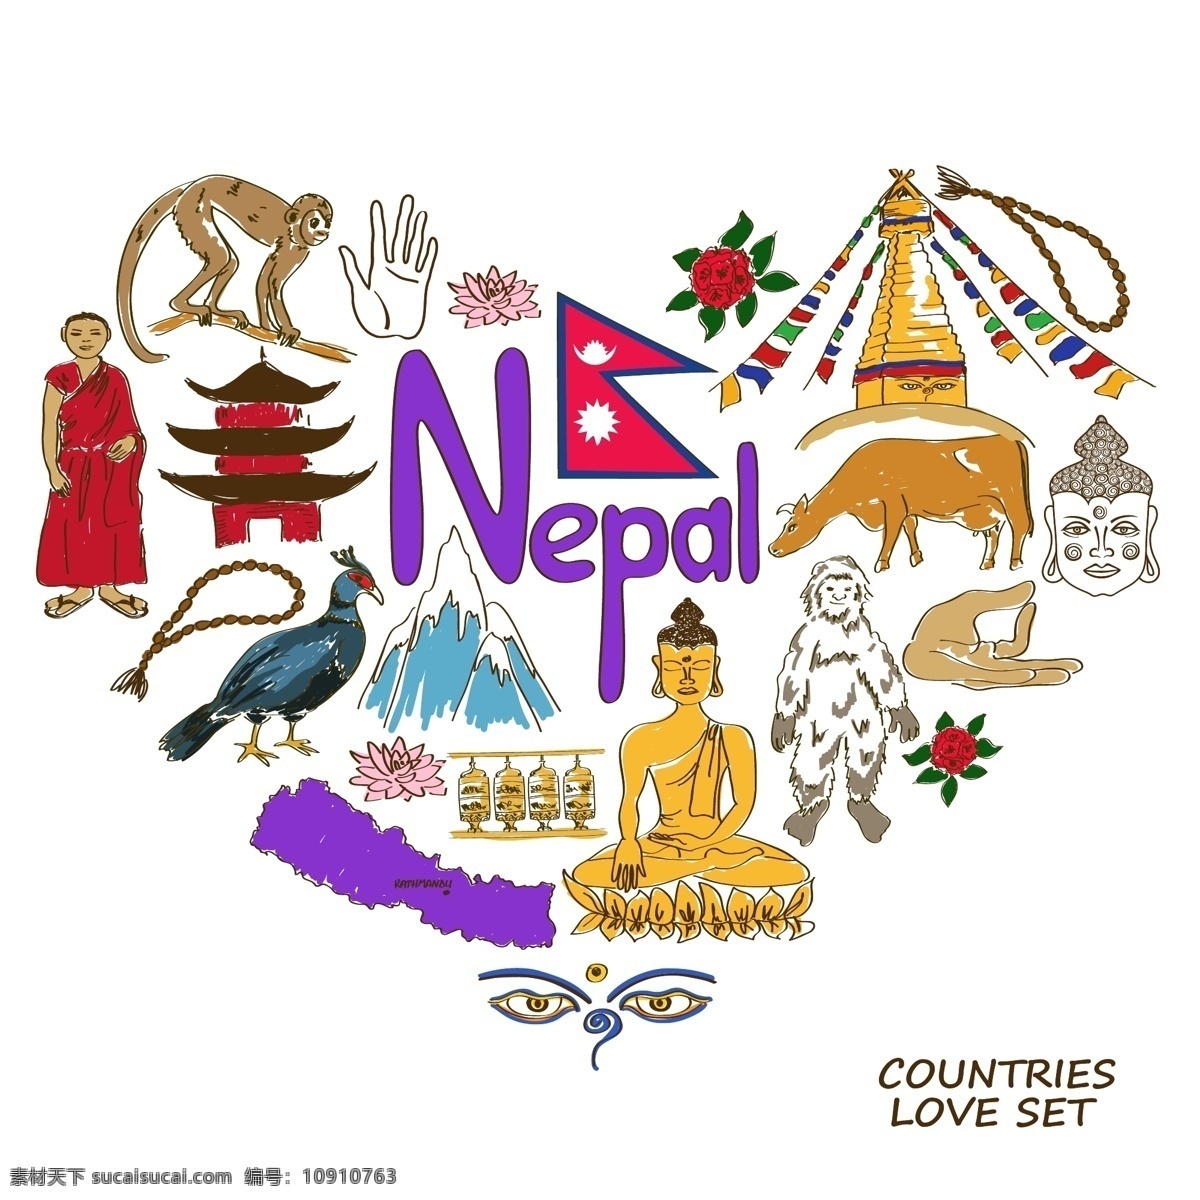 尼泊尔 国家 元素 国家元素 国家象征 国家图标 手绘 矢量 设计素材库 文化艺术 绘画书法